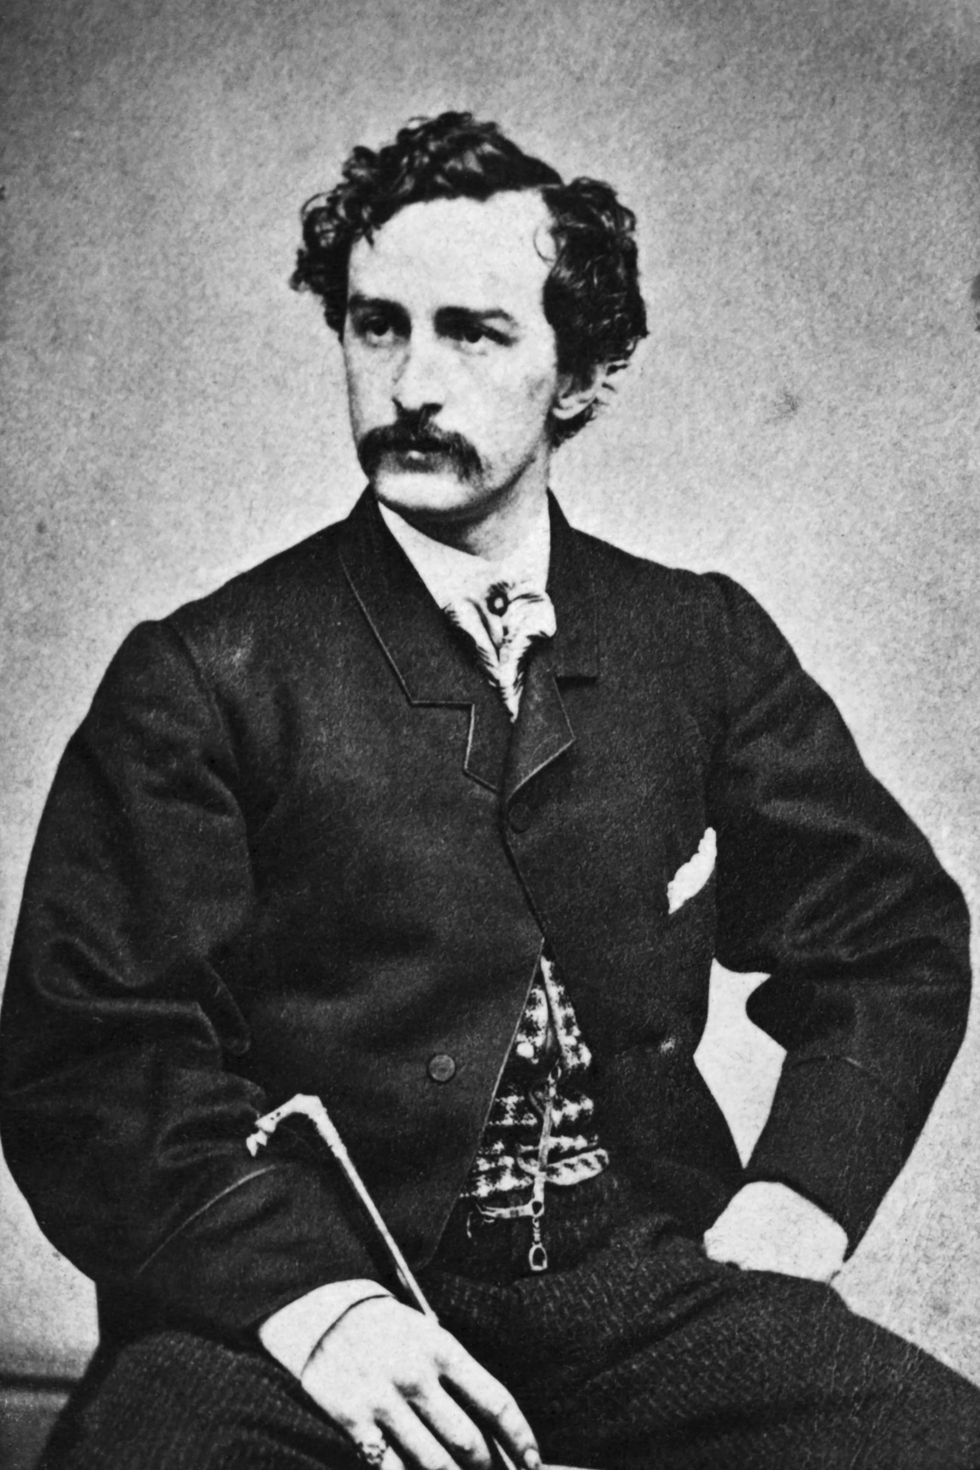 Een nietgedateerd portret van John Wilkes Booth